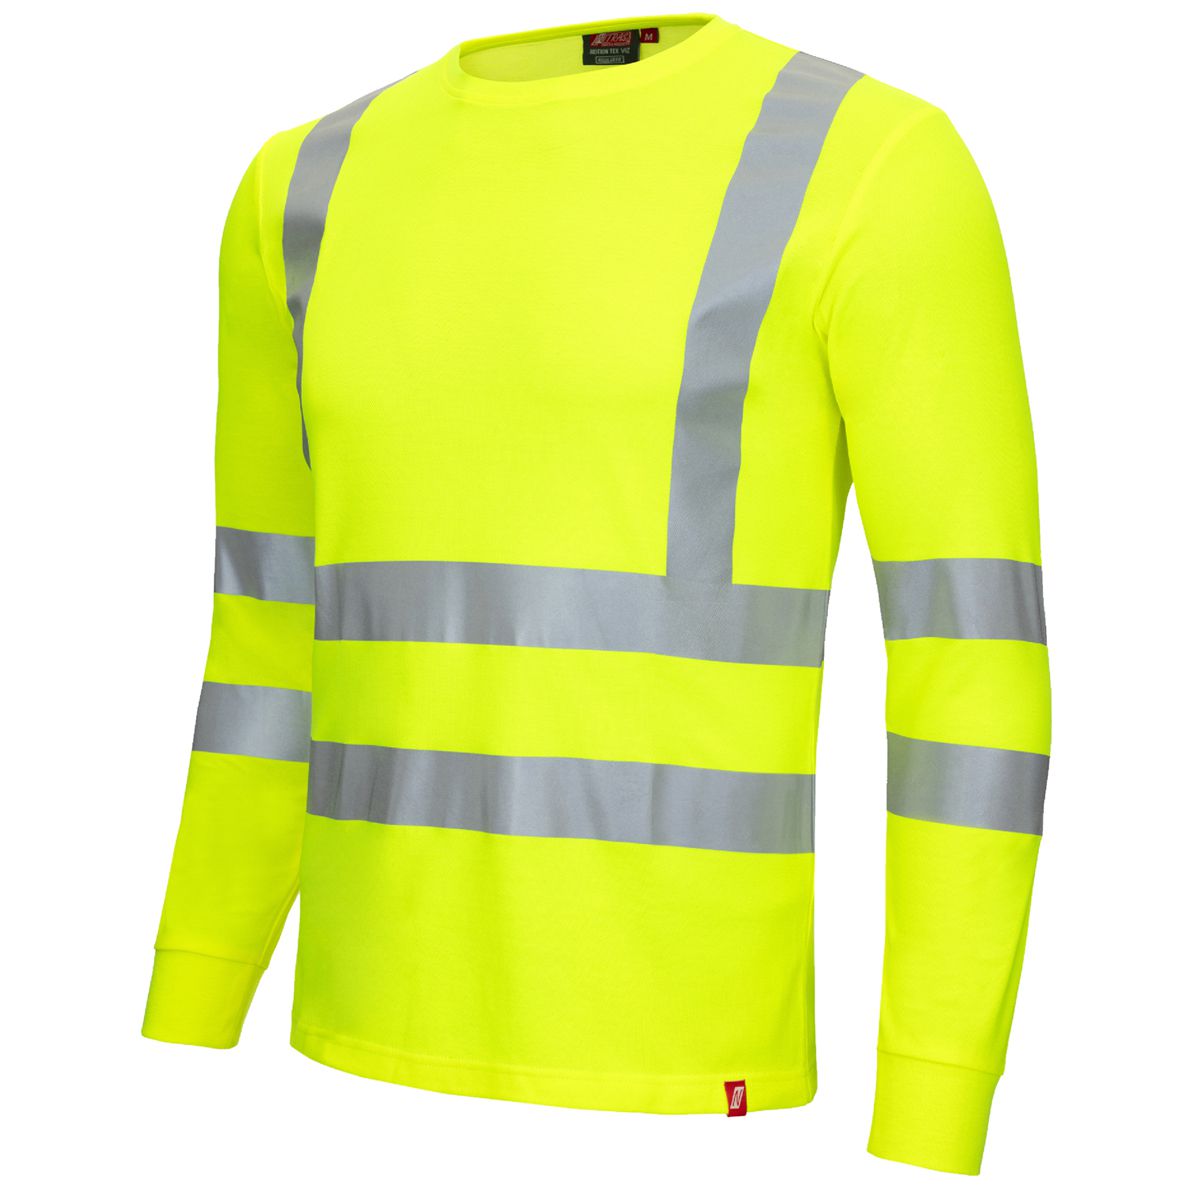 NITRAS MOTION TEX VIZ Warnschutz-Shirt - langärmliges T-Shirt in Warnfarbe - mit Reflex-Streifen